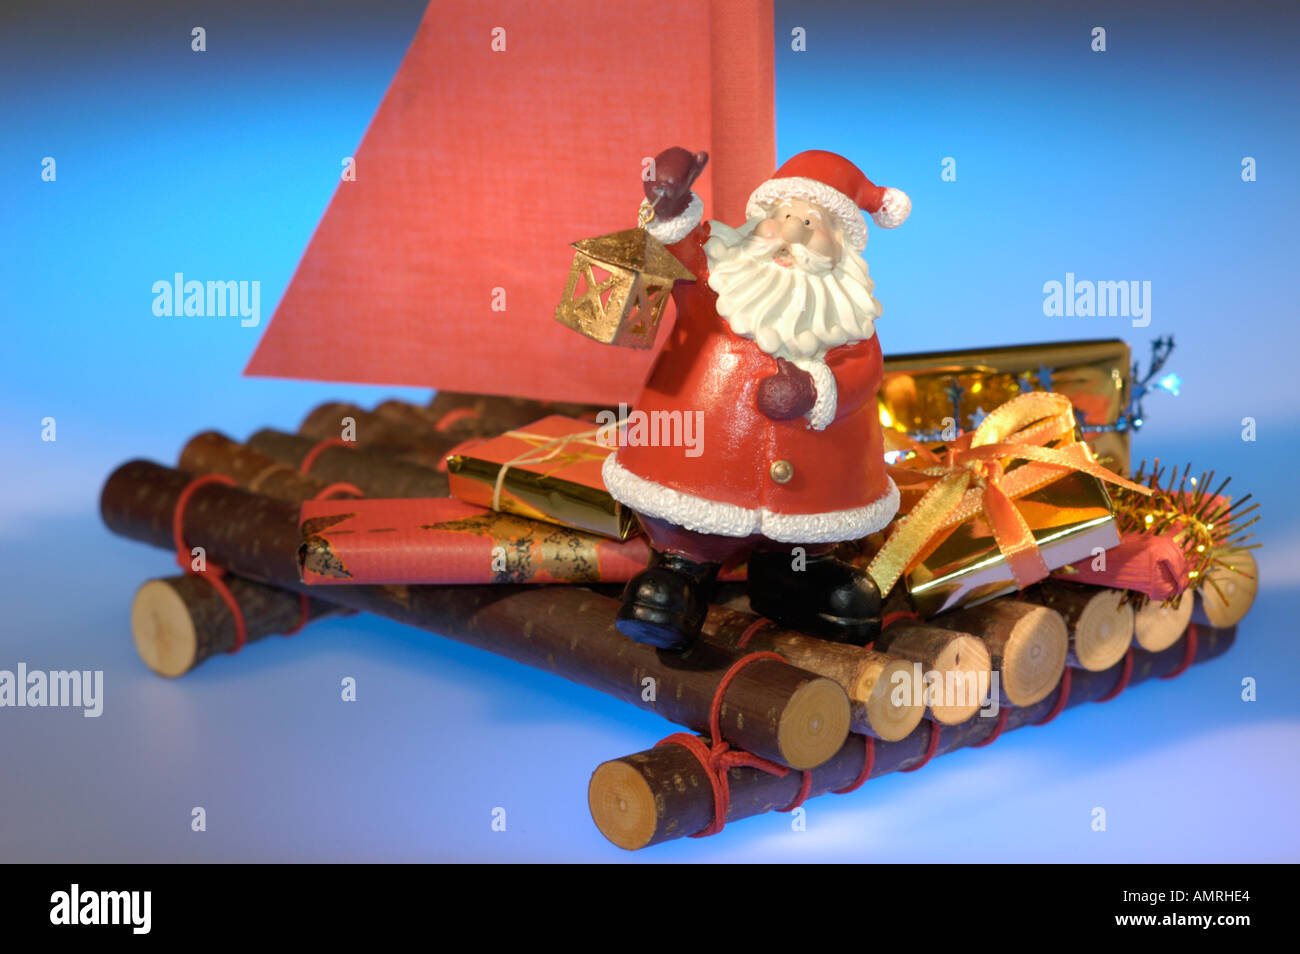 Nikolaus Santa Claus auf einem Floss Urlaub Reise ist überall Hiver Weihnachten auf der Welt Santa Claus sur un flotteur billet Banque D'Images